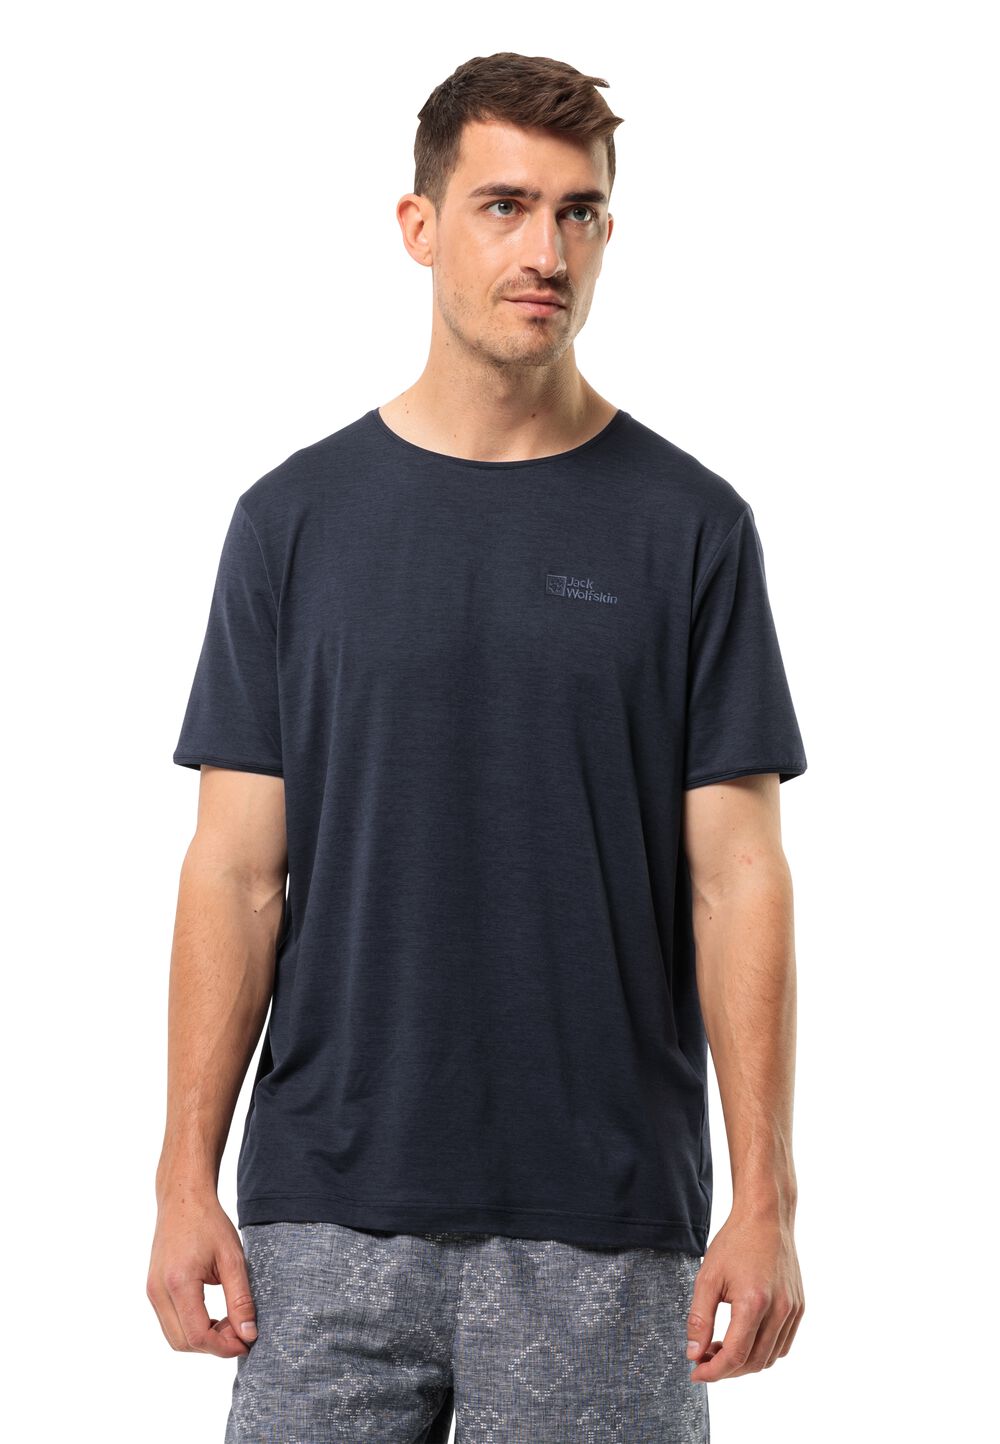 Jack Wolfskin Travel T-Shirt Men Functioneel shirt Heren 3XL blue night blue